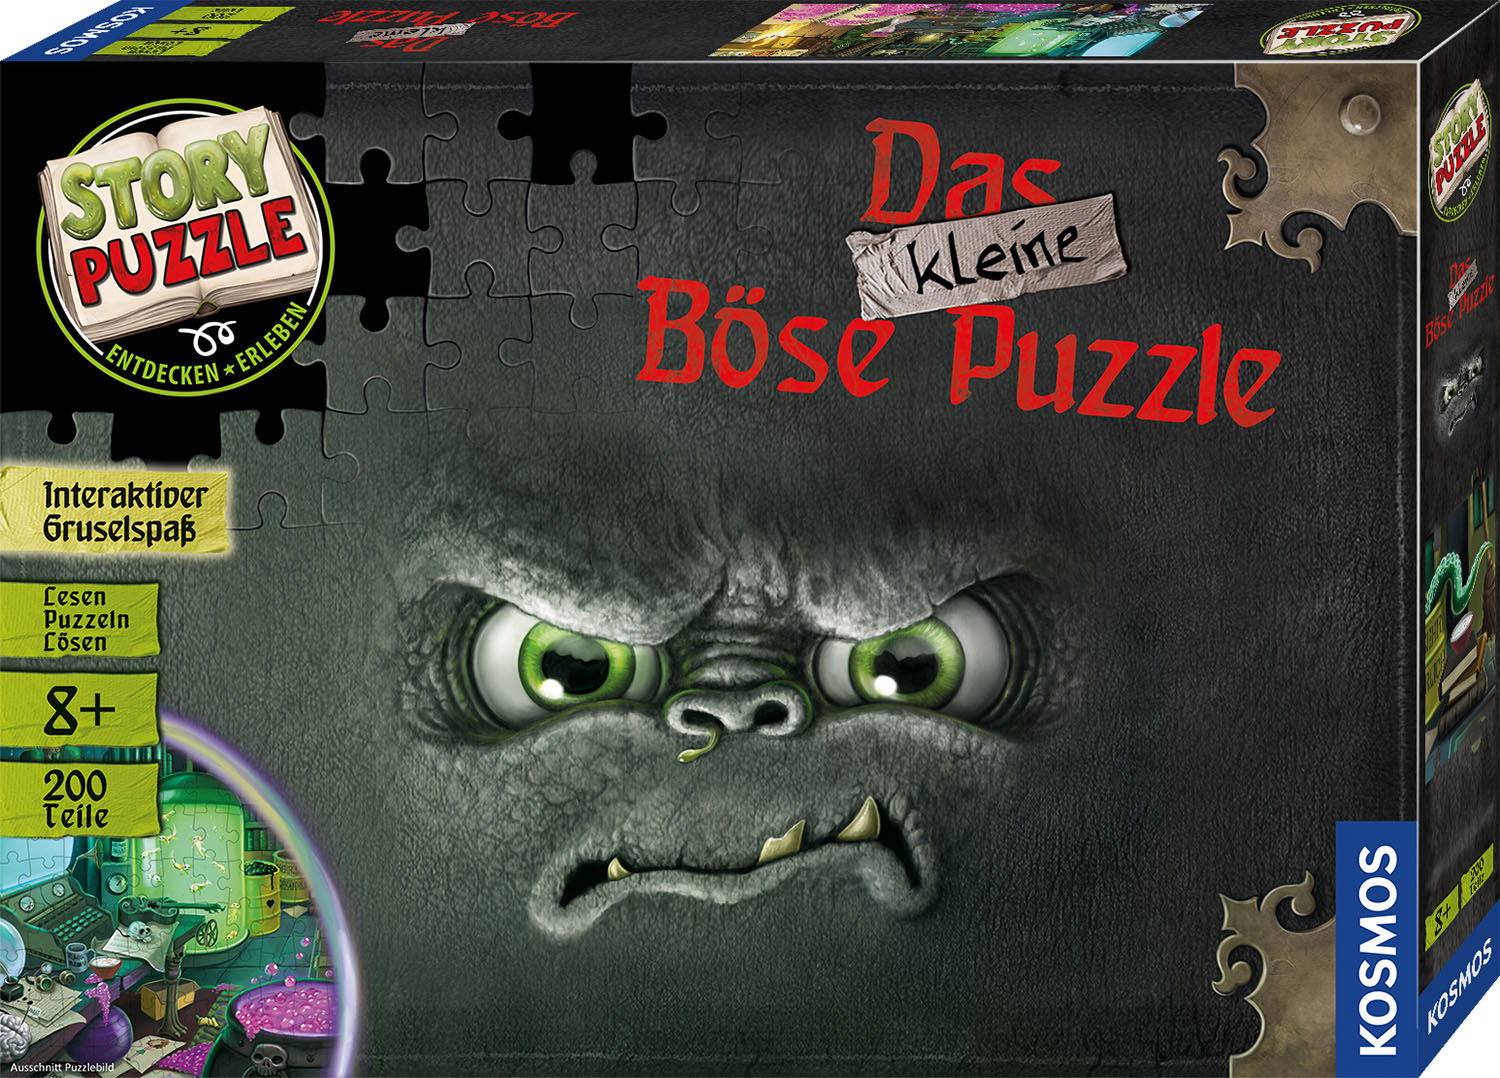 Story KOSMOS Das Puzzle Mehrfarbig kleine böse Puzzle Puzzle: